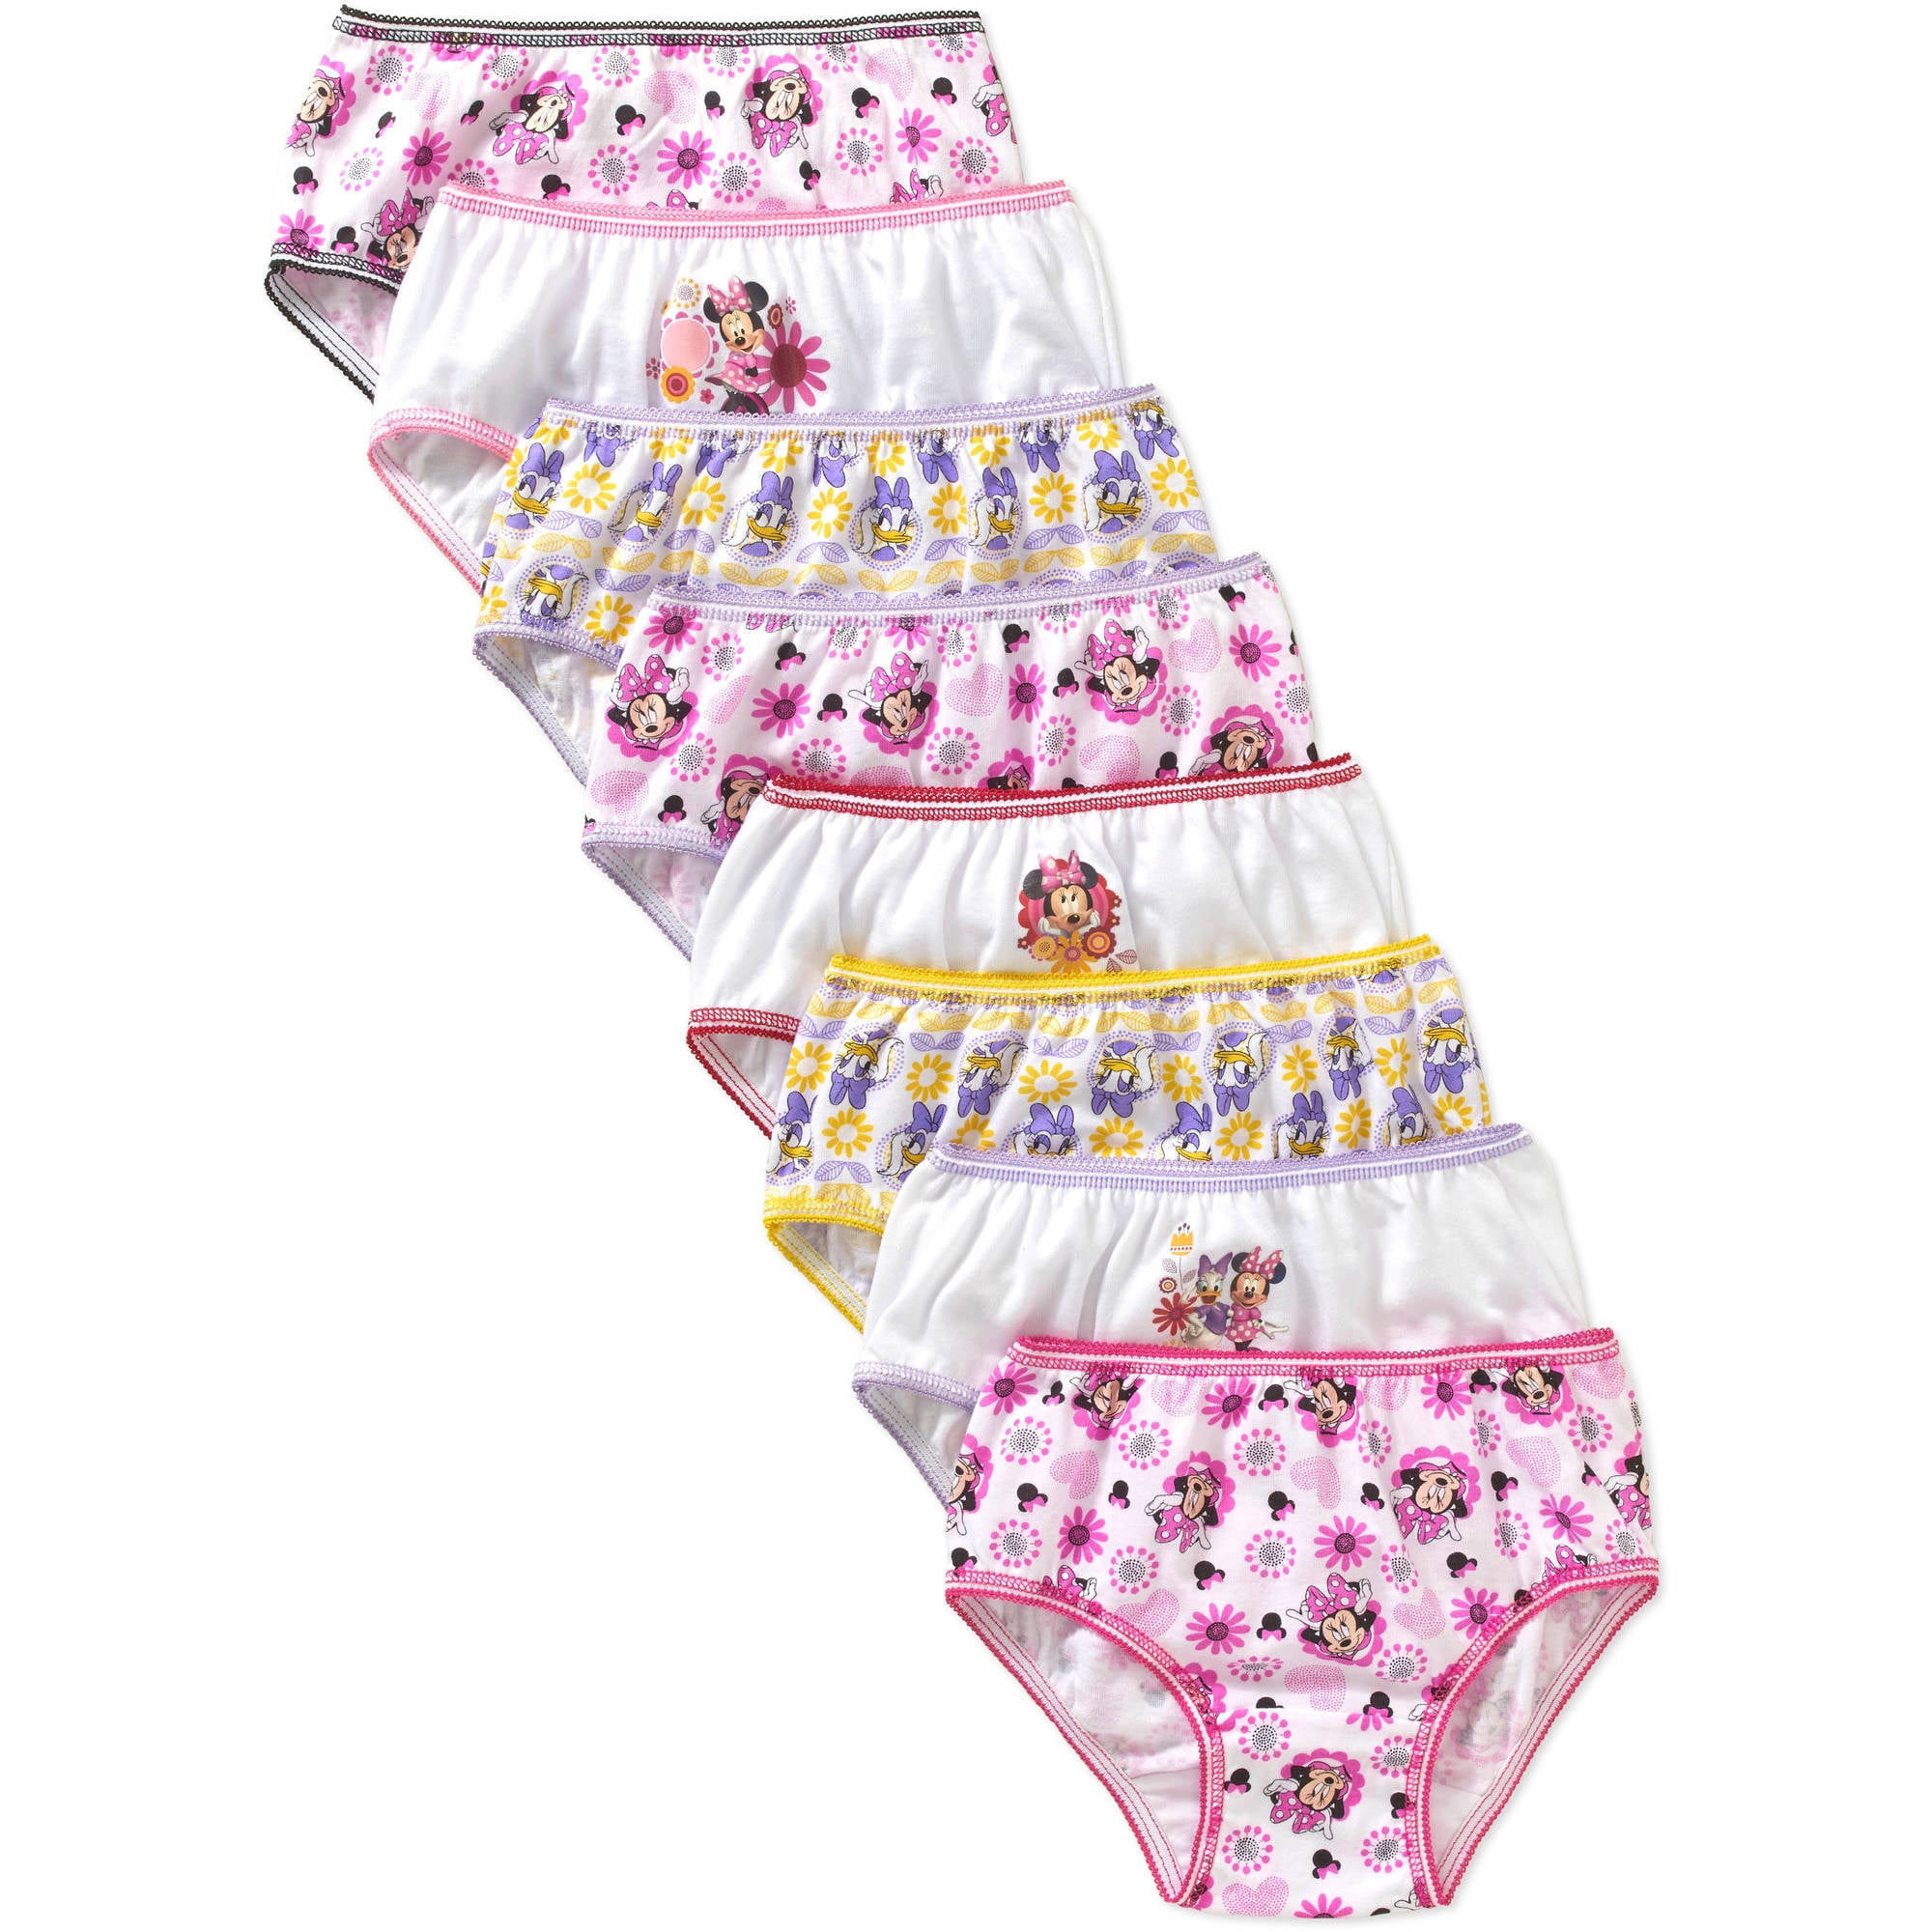 Moana Girls' Underwear, 8 Pack Panties (Little Girls & Big Girls)